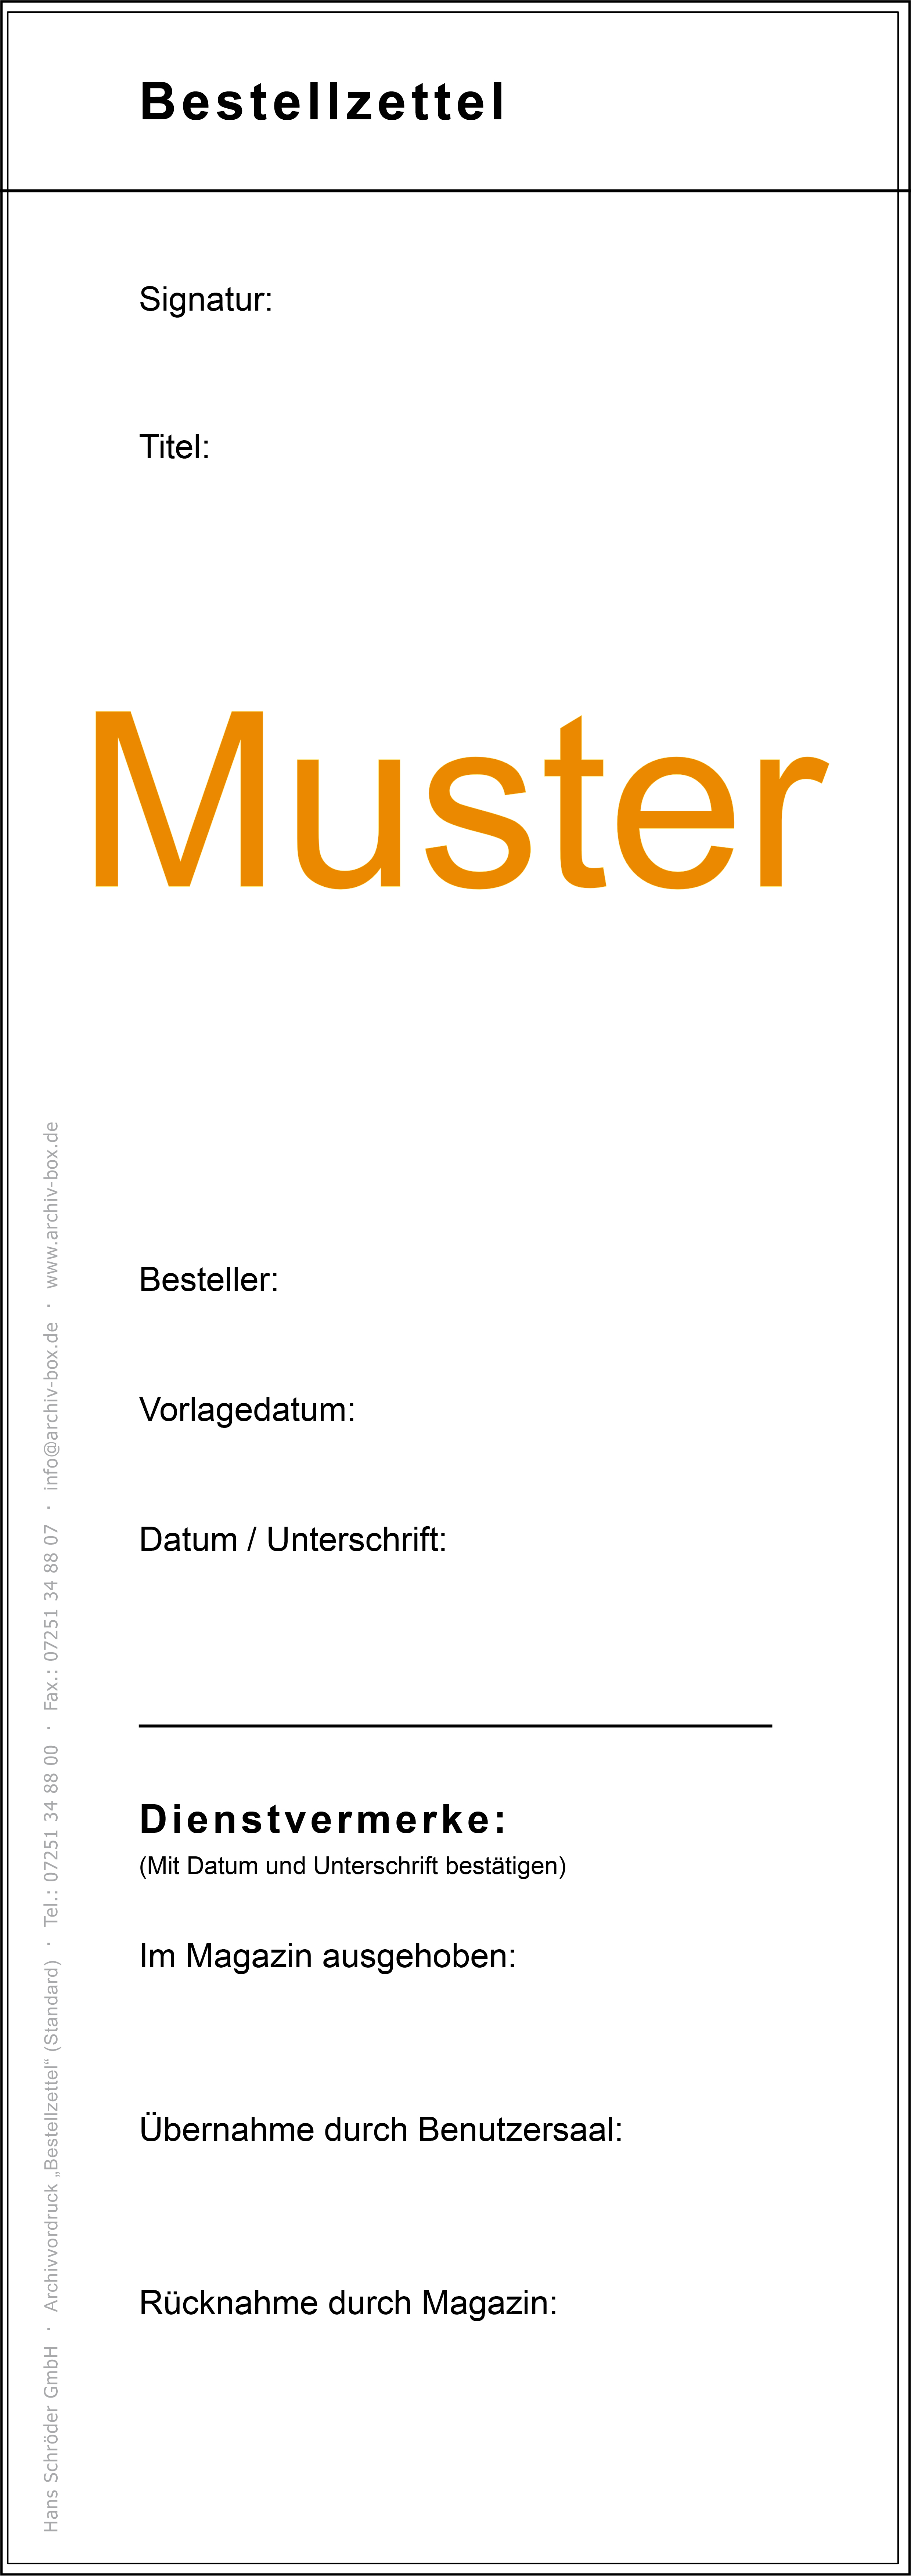 Bestellzettel (German)